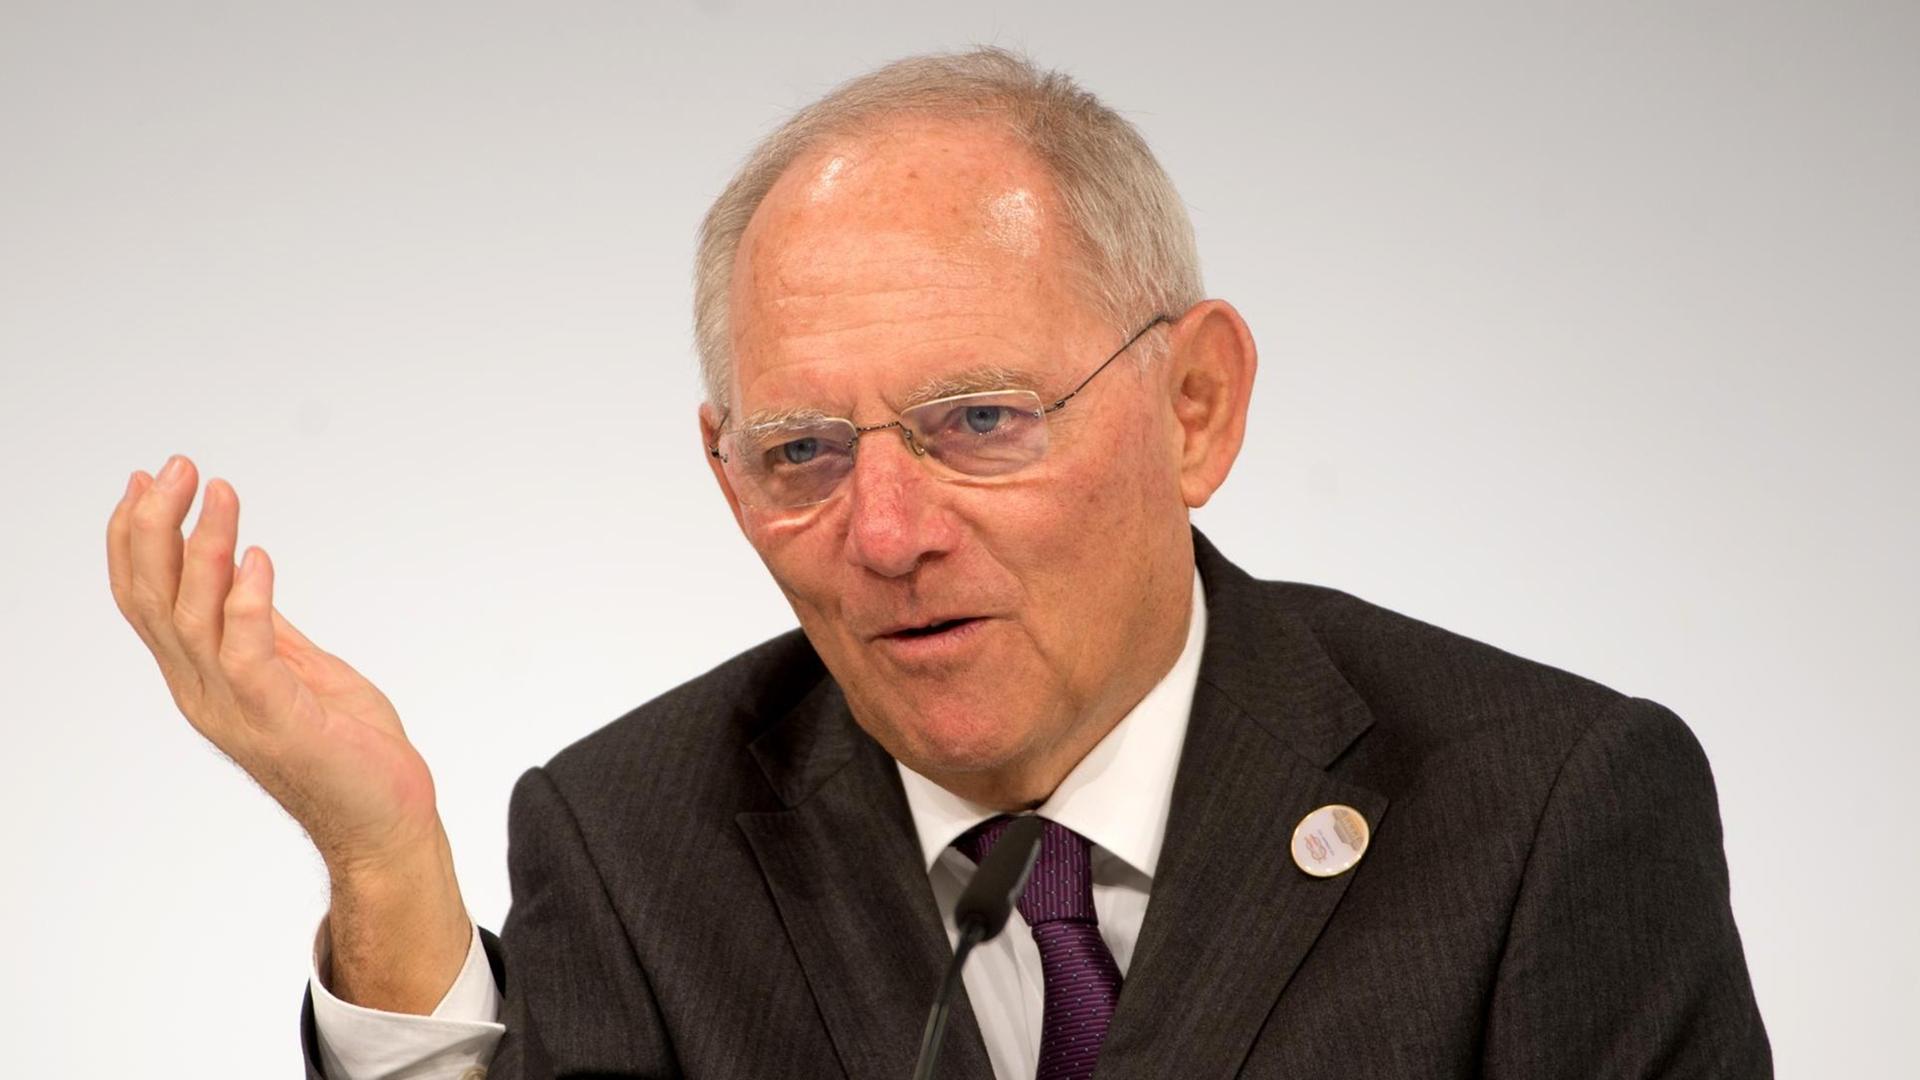 Bundesfinanzminister Wolfgang Schäuble (CDU) auf einer Pressekonferenz beim Treffen der G20-Finanzminister in Baden-Baden.